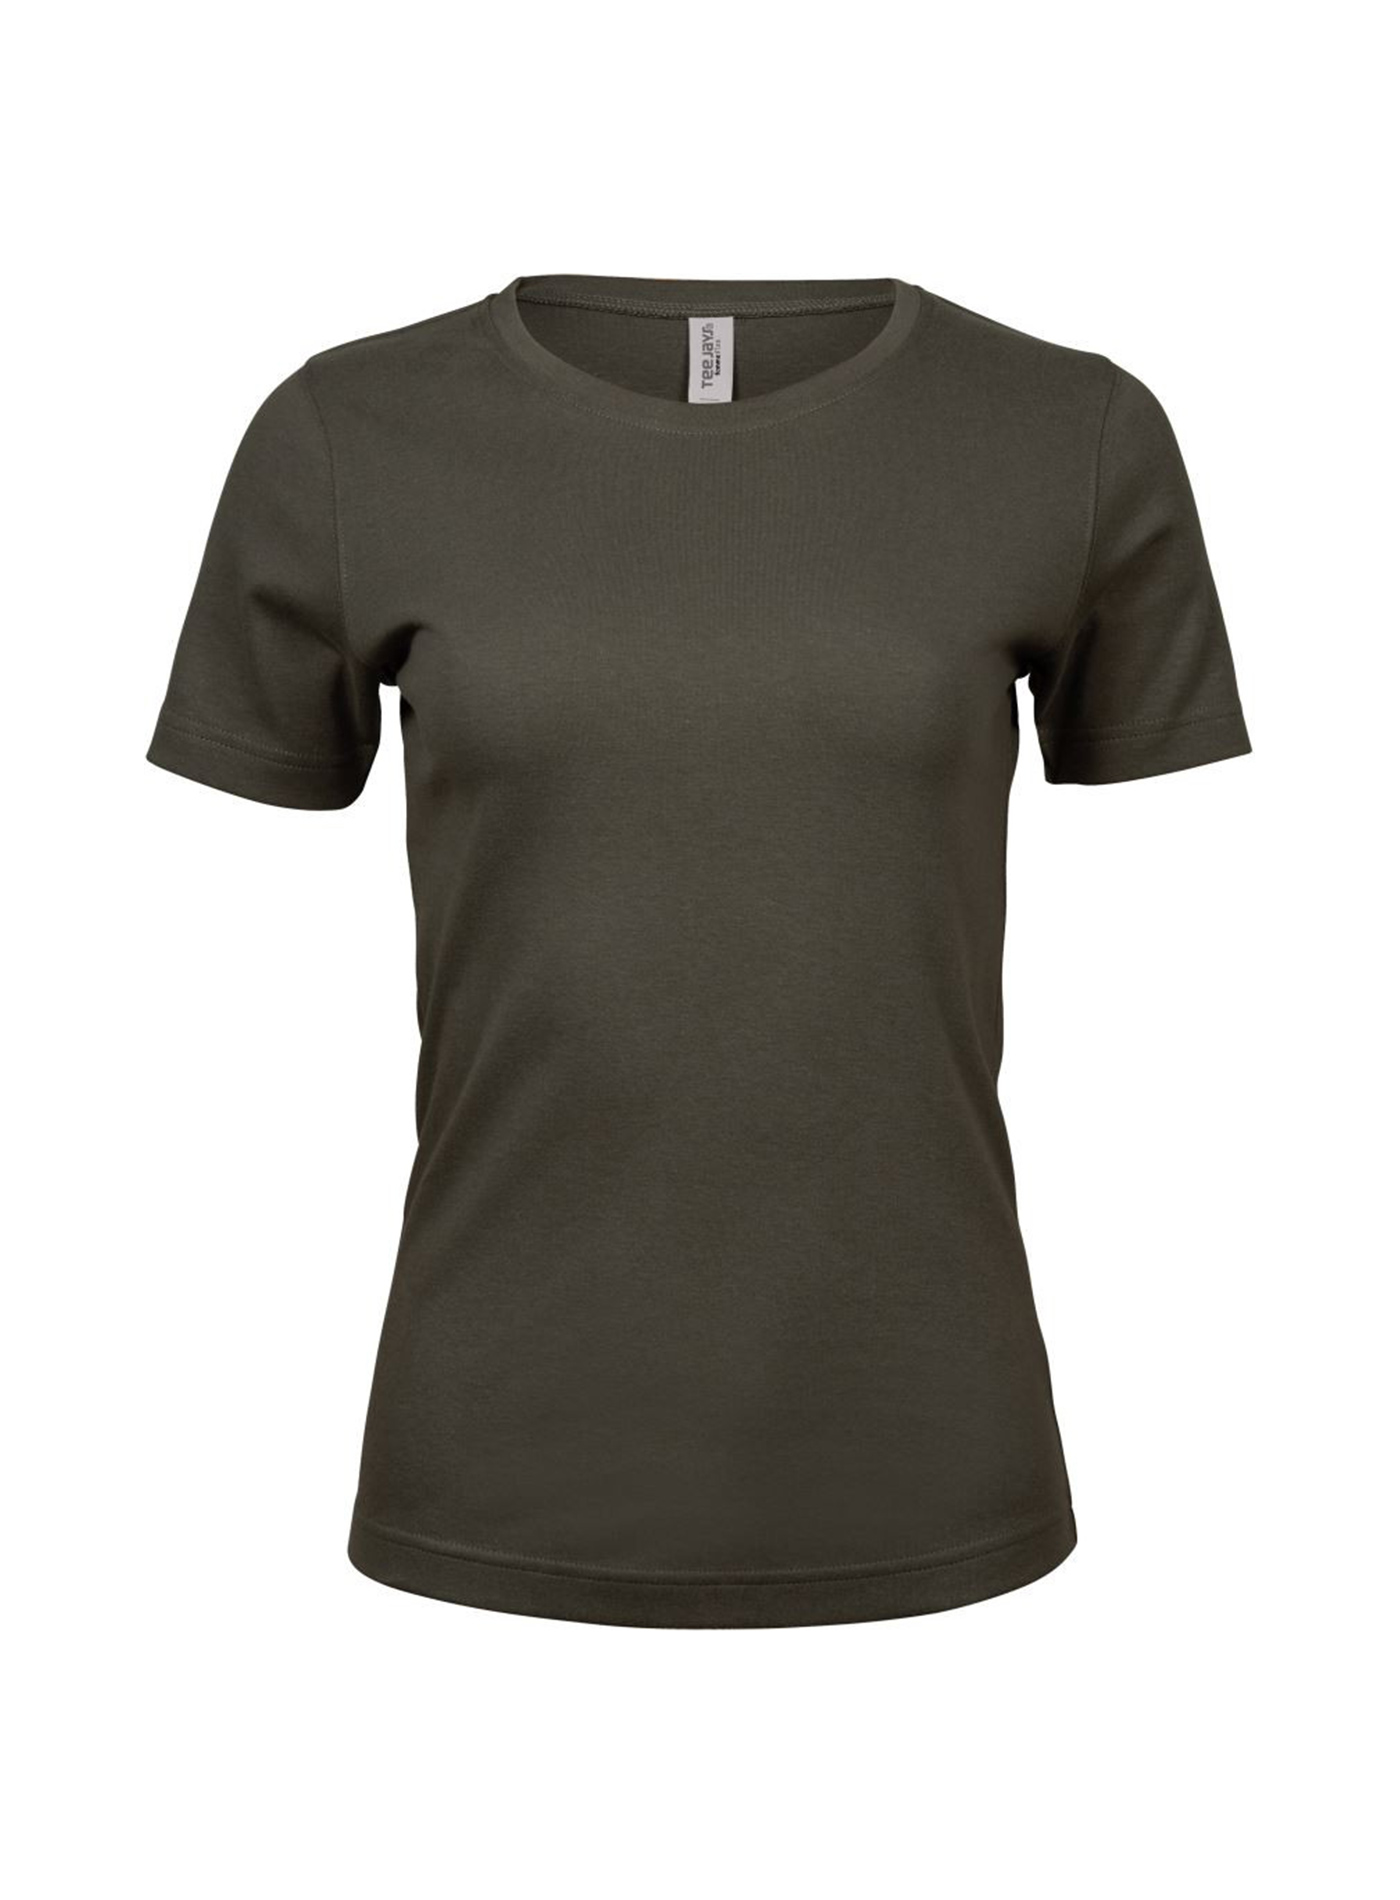 Silné bavlněné tričko Tee Jays Interlock - Tmavě olivová XL